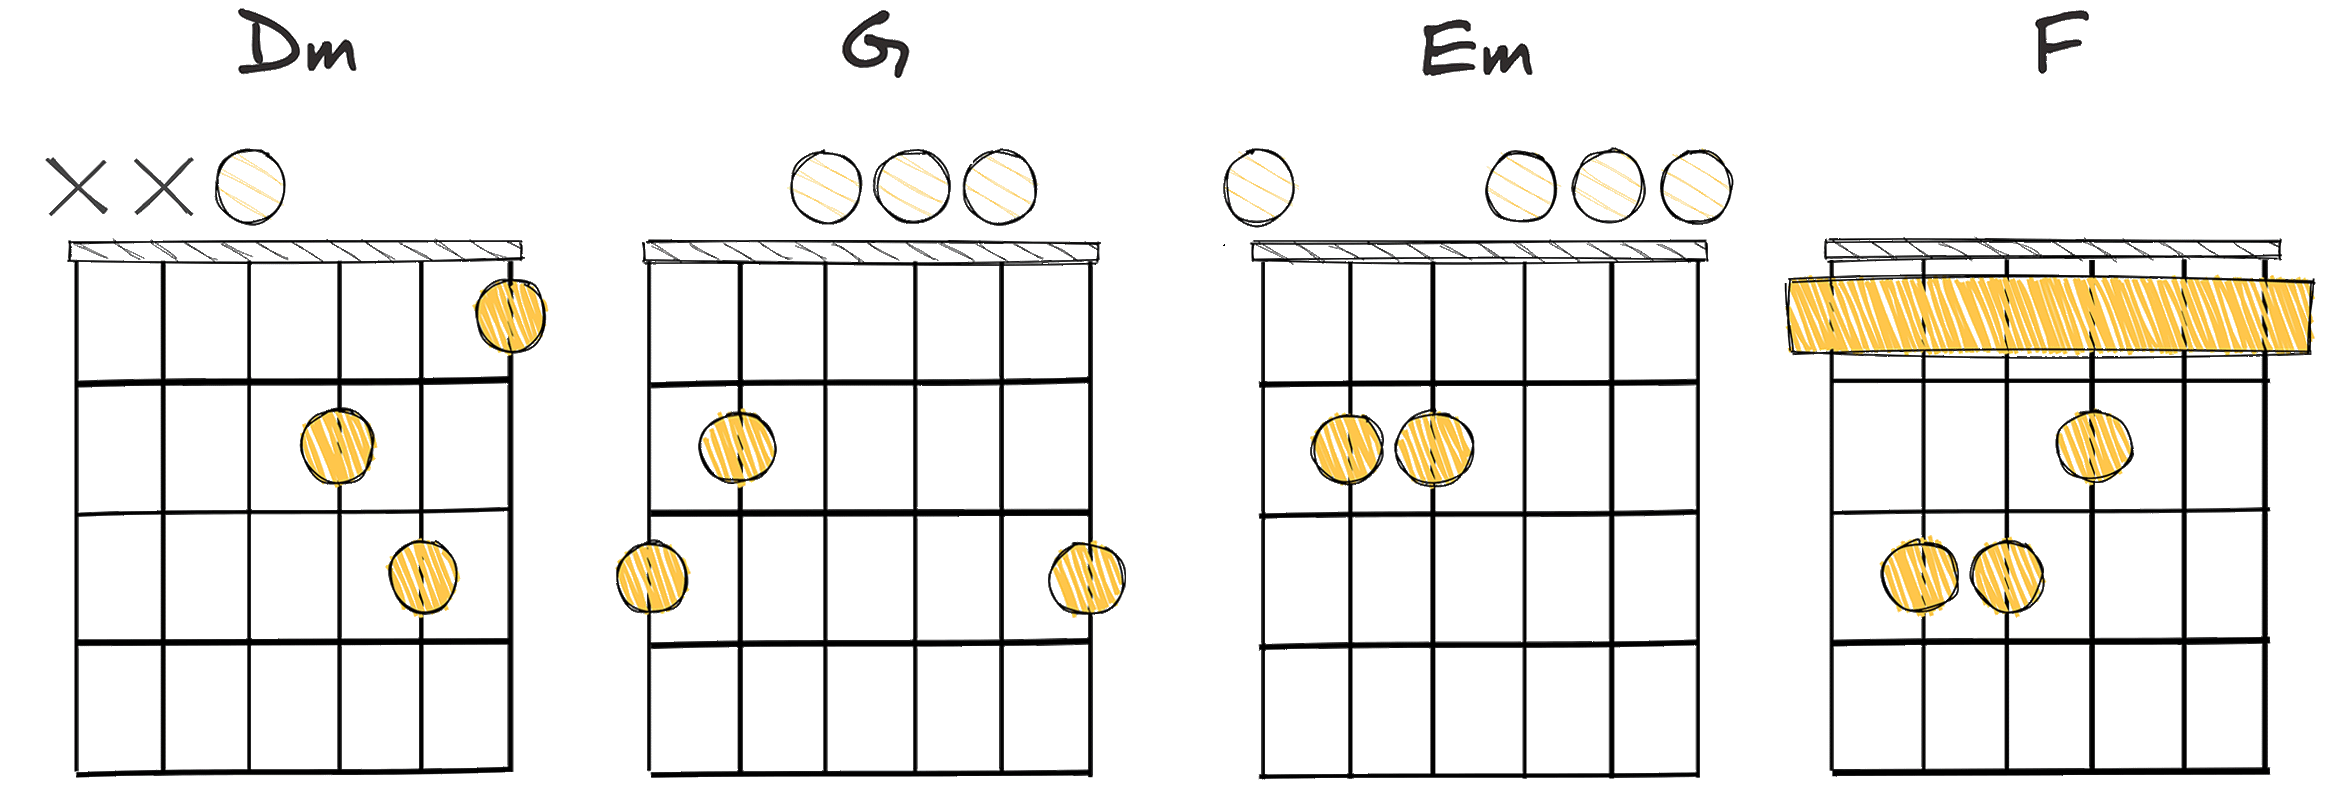 ii - V - iii - IV (2 – 5 – 3 – 4) chords diagram